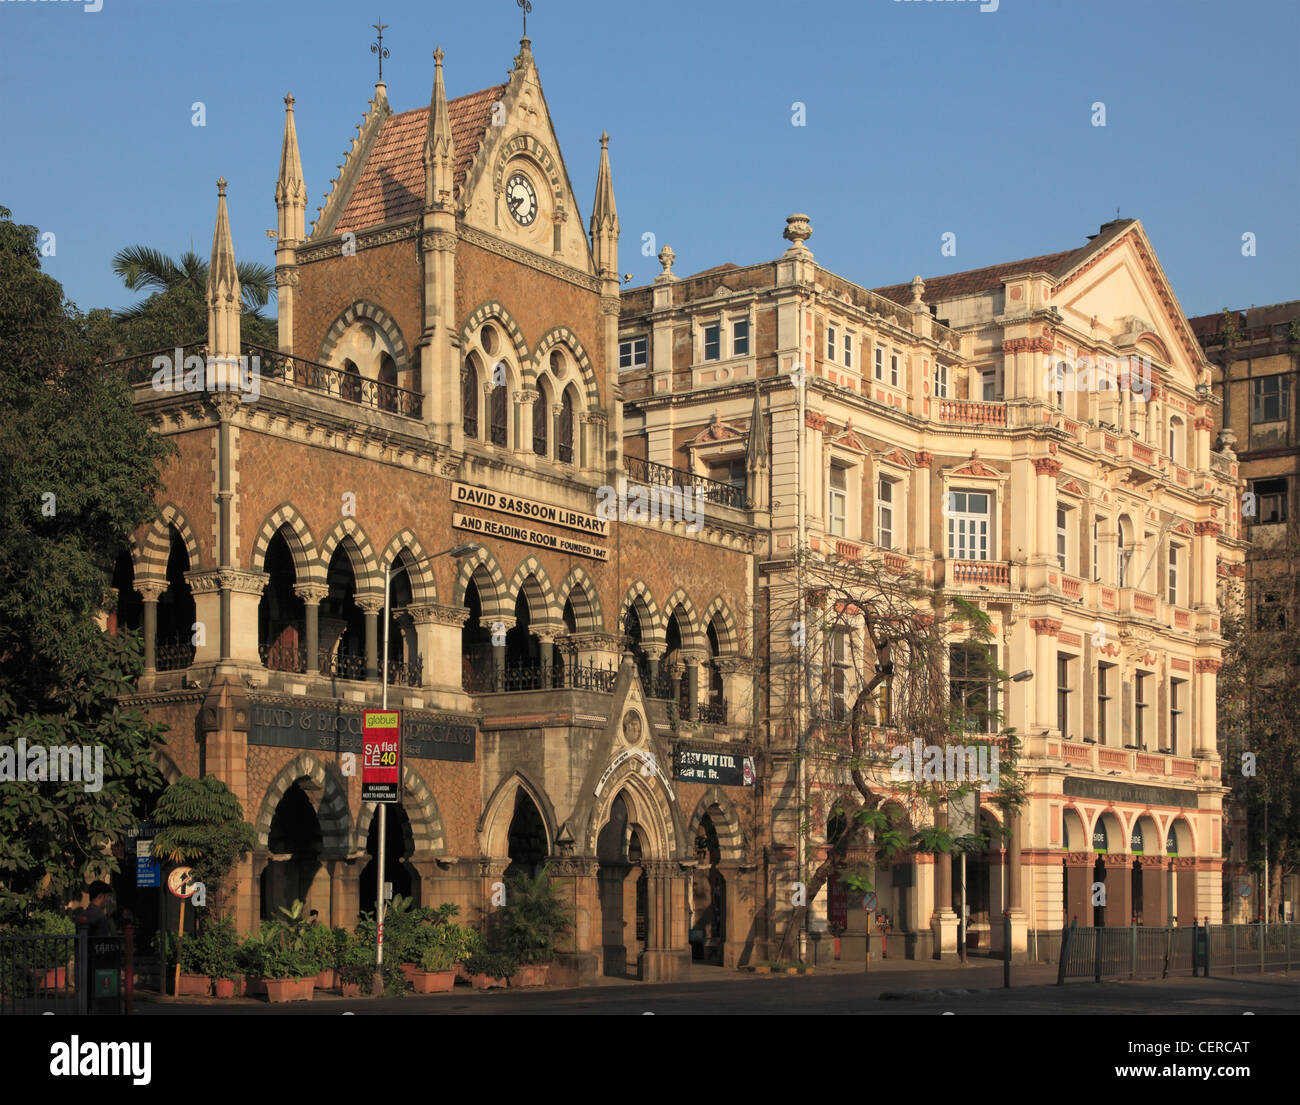 India, Maharashtra, Mumbai, Sassoon Library, Army & Navy Building, Stock Photo